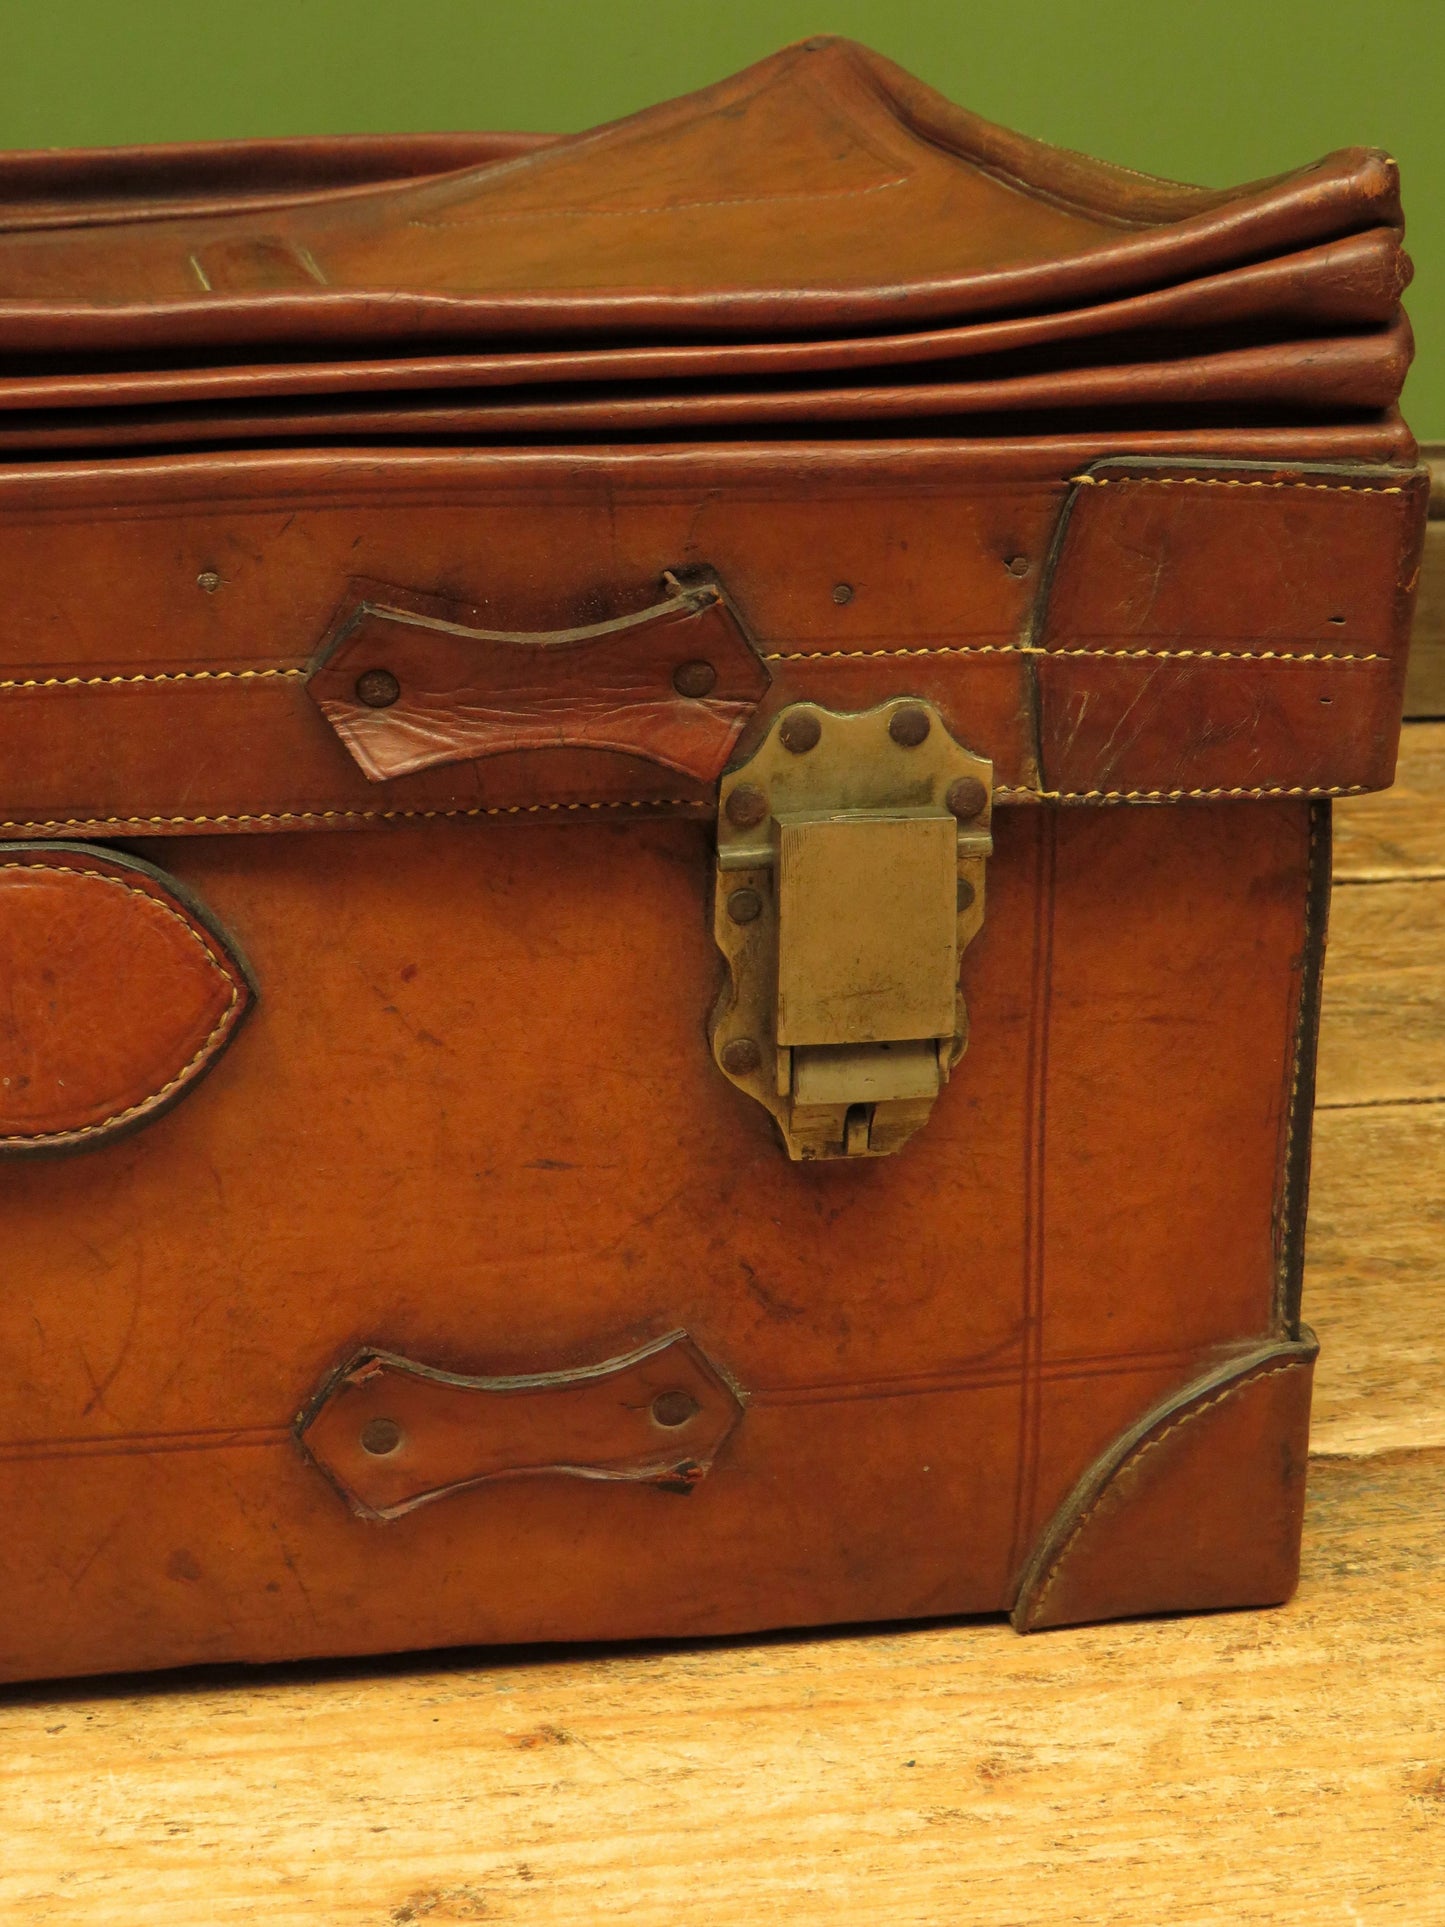 Leather Portmanteau Expanding Suitcase